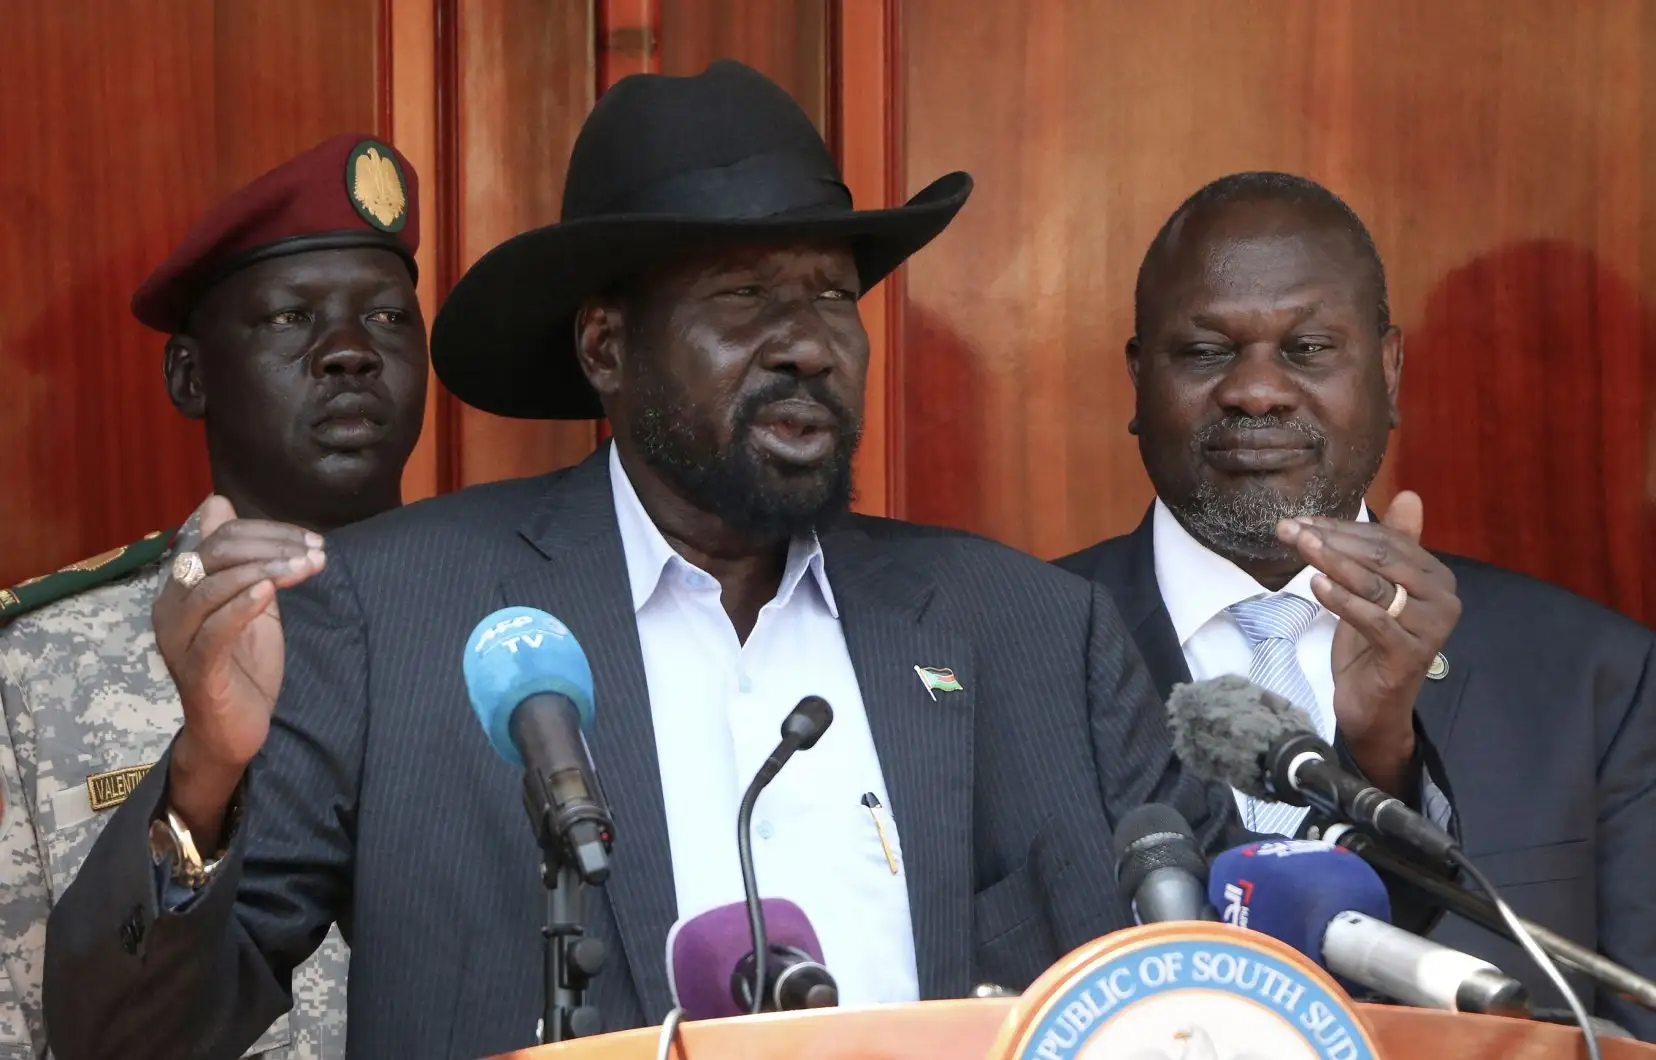 Le mode de désignation des députés suscite une polémique politique au Soudan du Sud